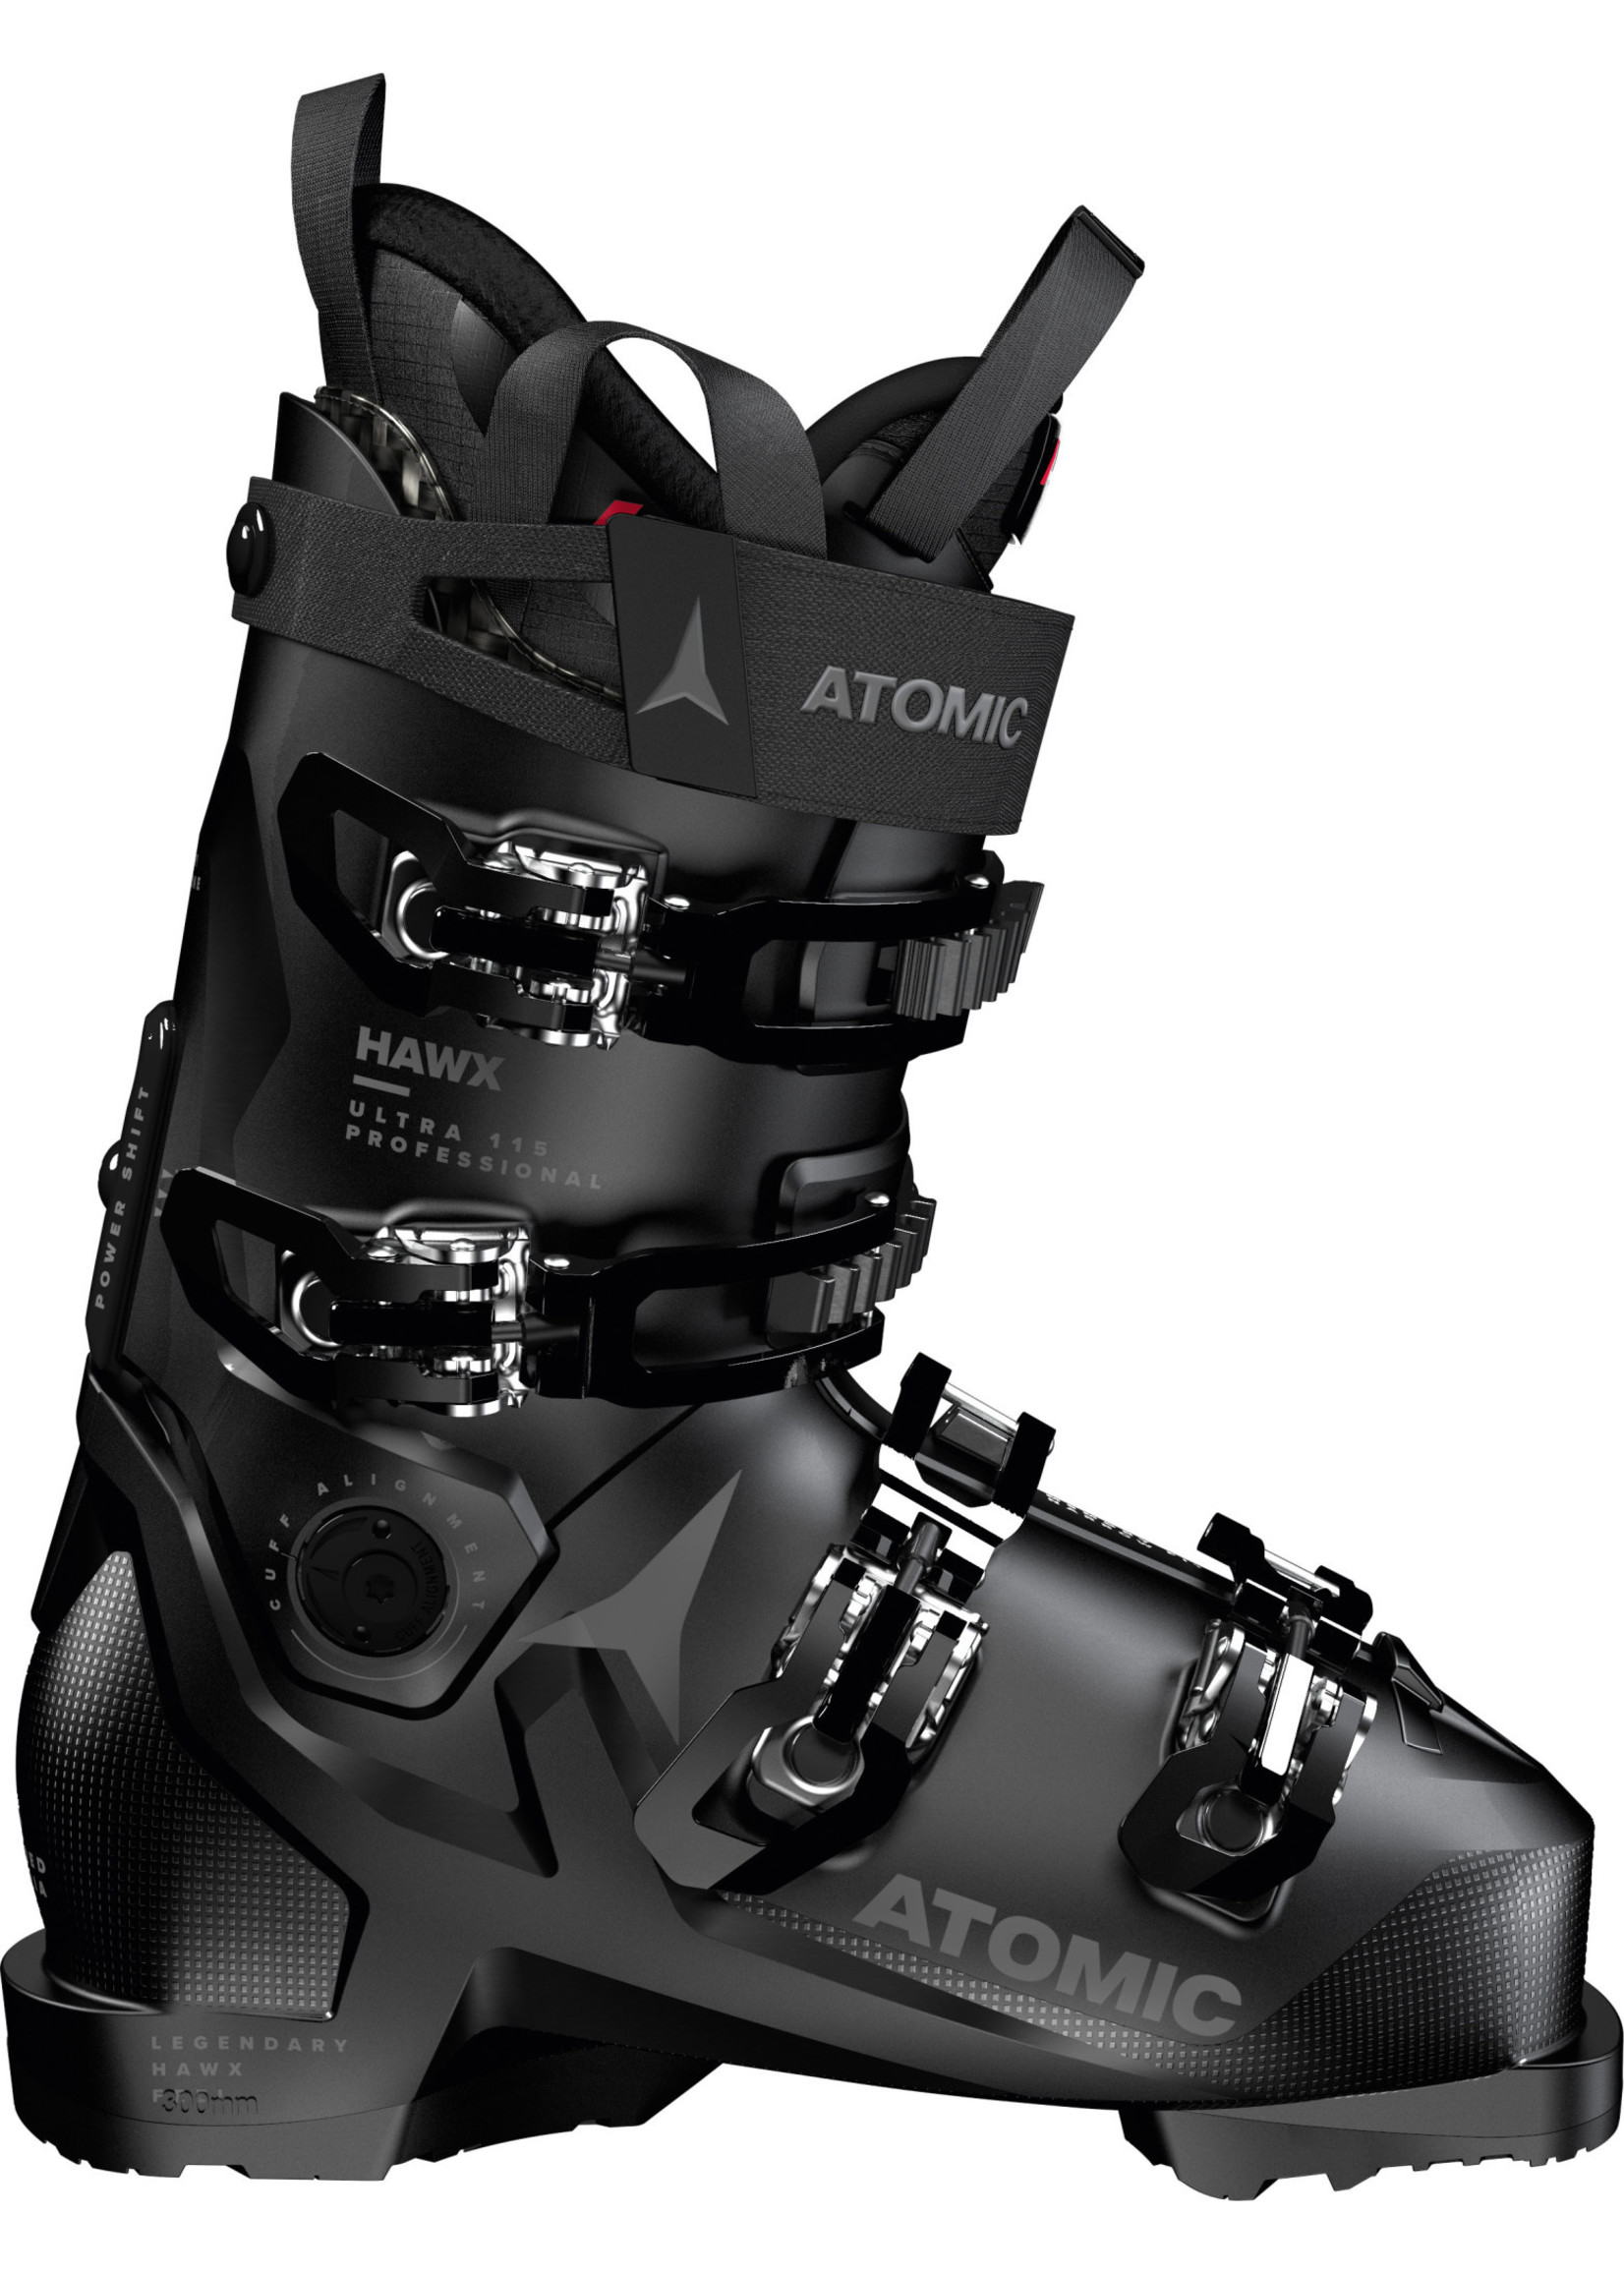 Atomic Ski Boot Alpine Hawx Ultra 115 Professional